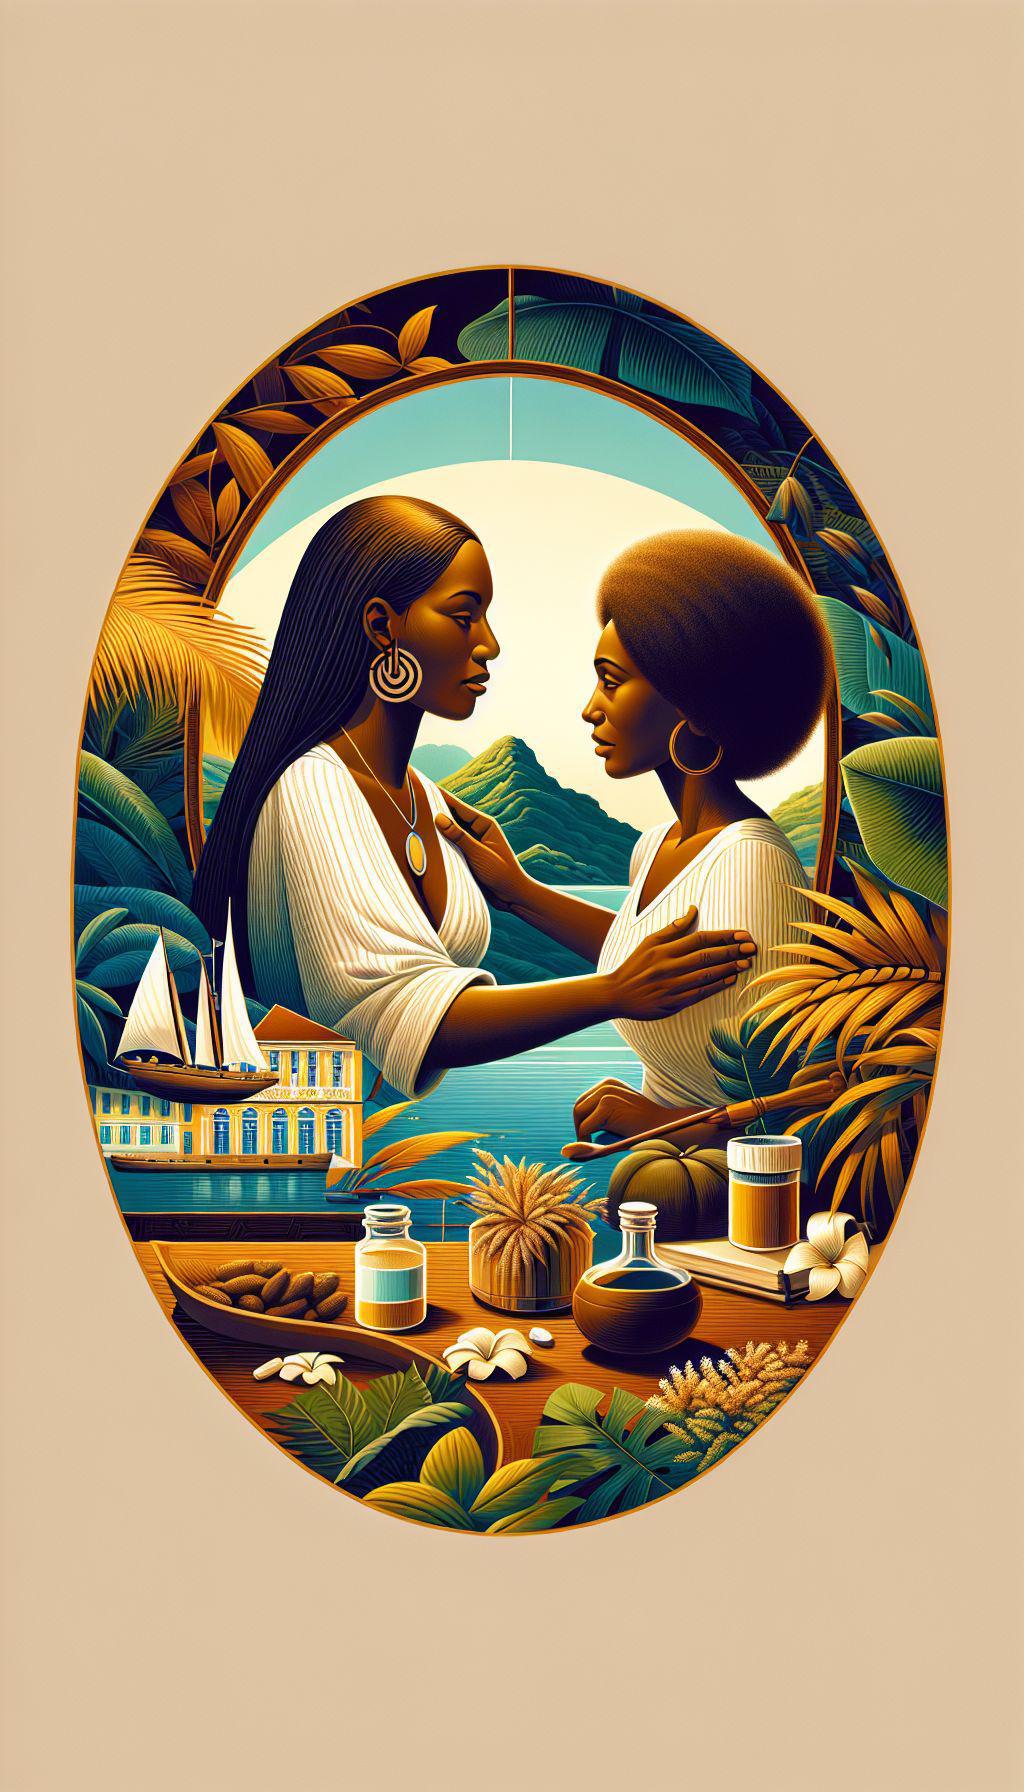 Comment La Puissance du Féminin utilise-t-elle la naturopathie pour accompagner les femmes en Martinique souffrant de déséquilibres hormonaux ?